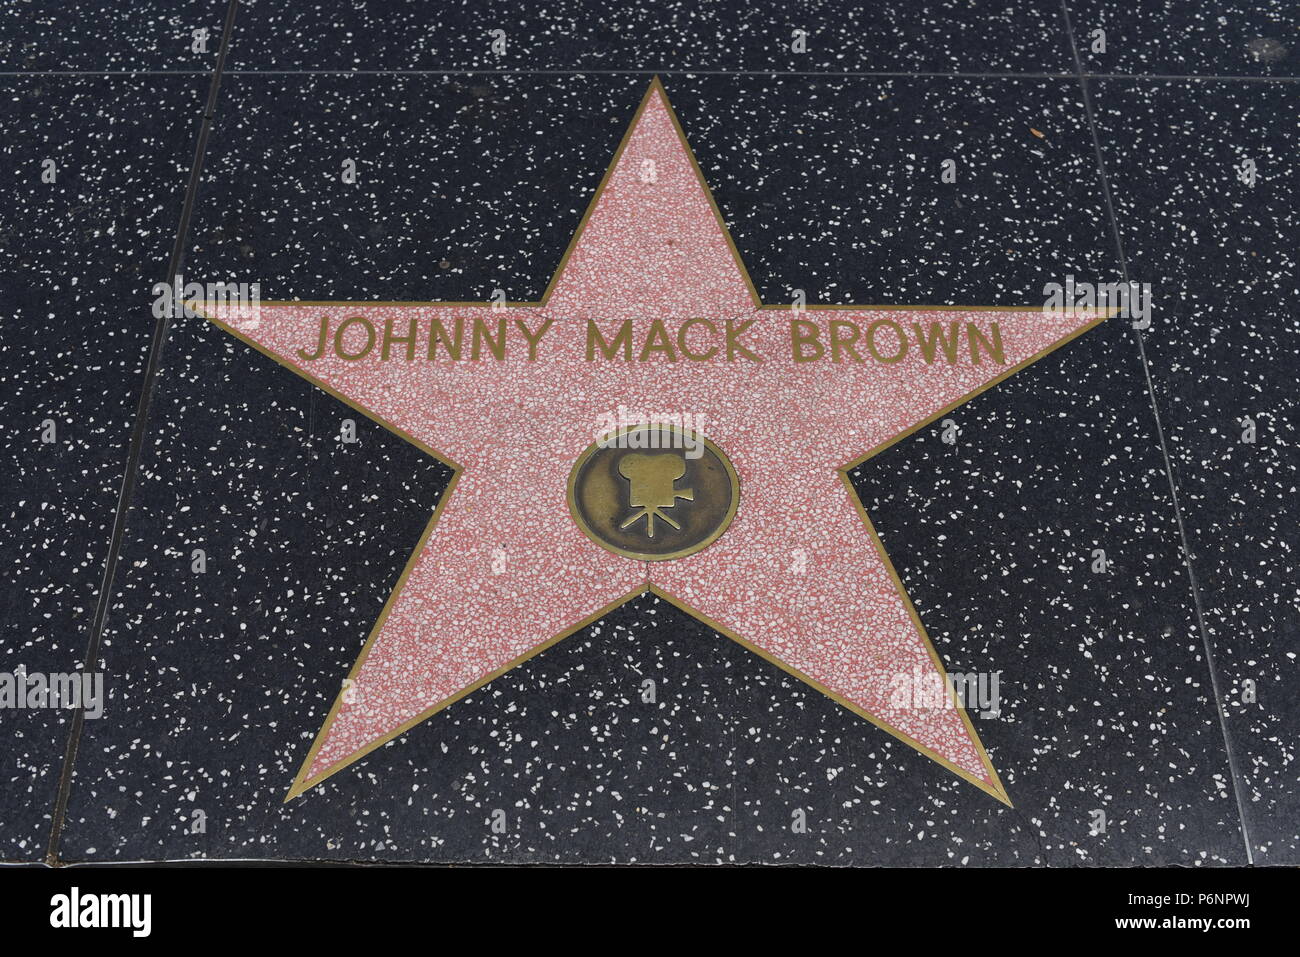 HOLLYWOOD, CA - 29 Giugno: Johnny Mack Brown della stella sulla Hollywood Walk of Fame in Hollywood, la California il 29 giugno 2018. Foto Stock